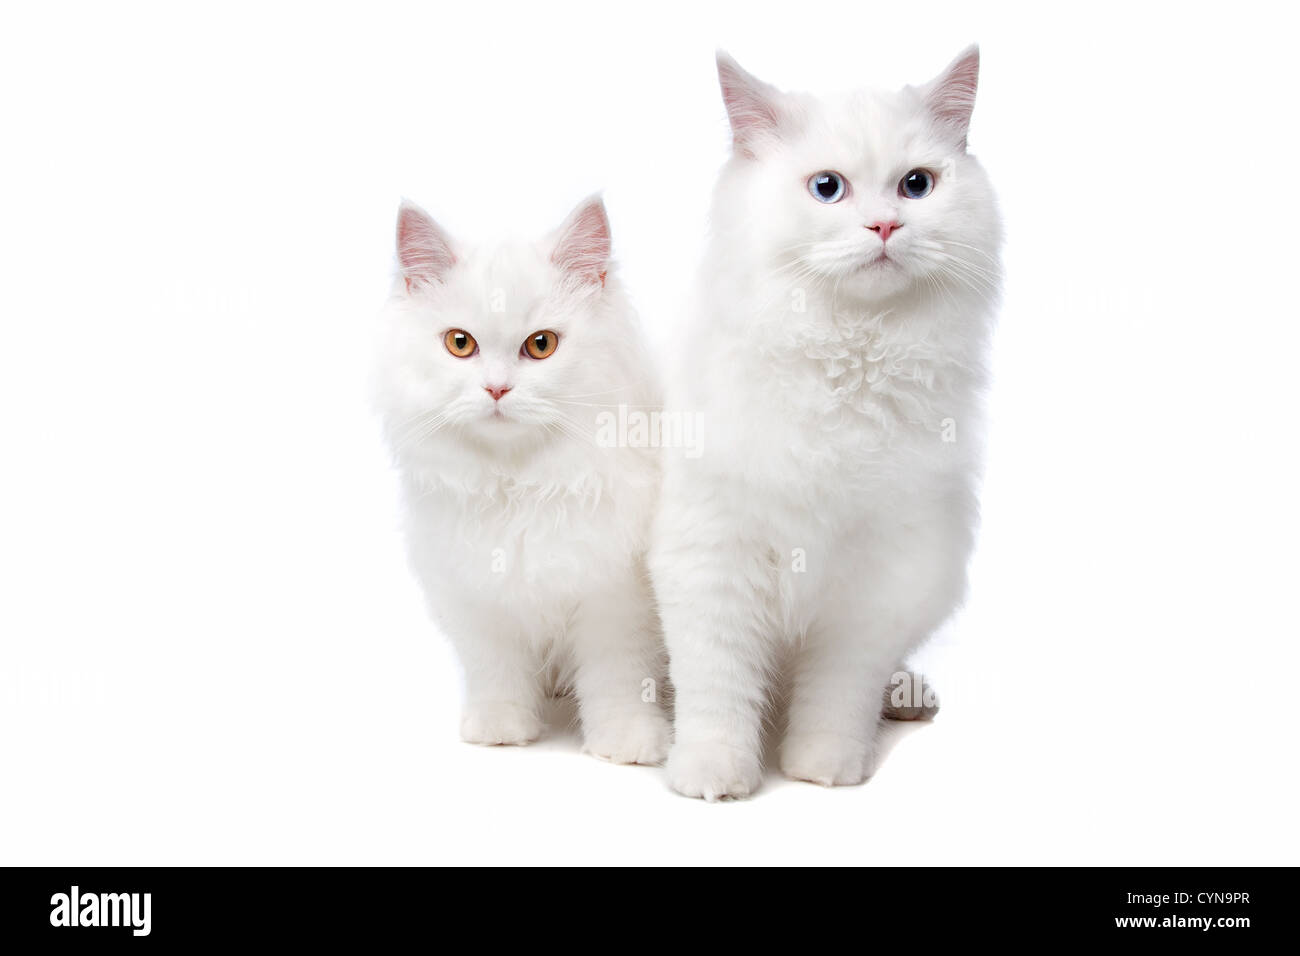 Dos gatos blancos con ojos azules y amarillas. Sobre un fondo blanco. Foto de stock